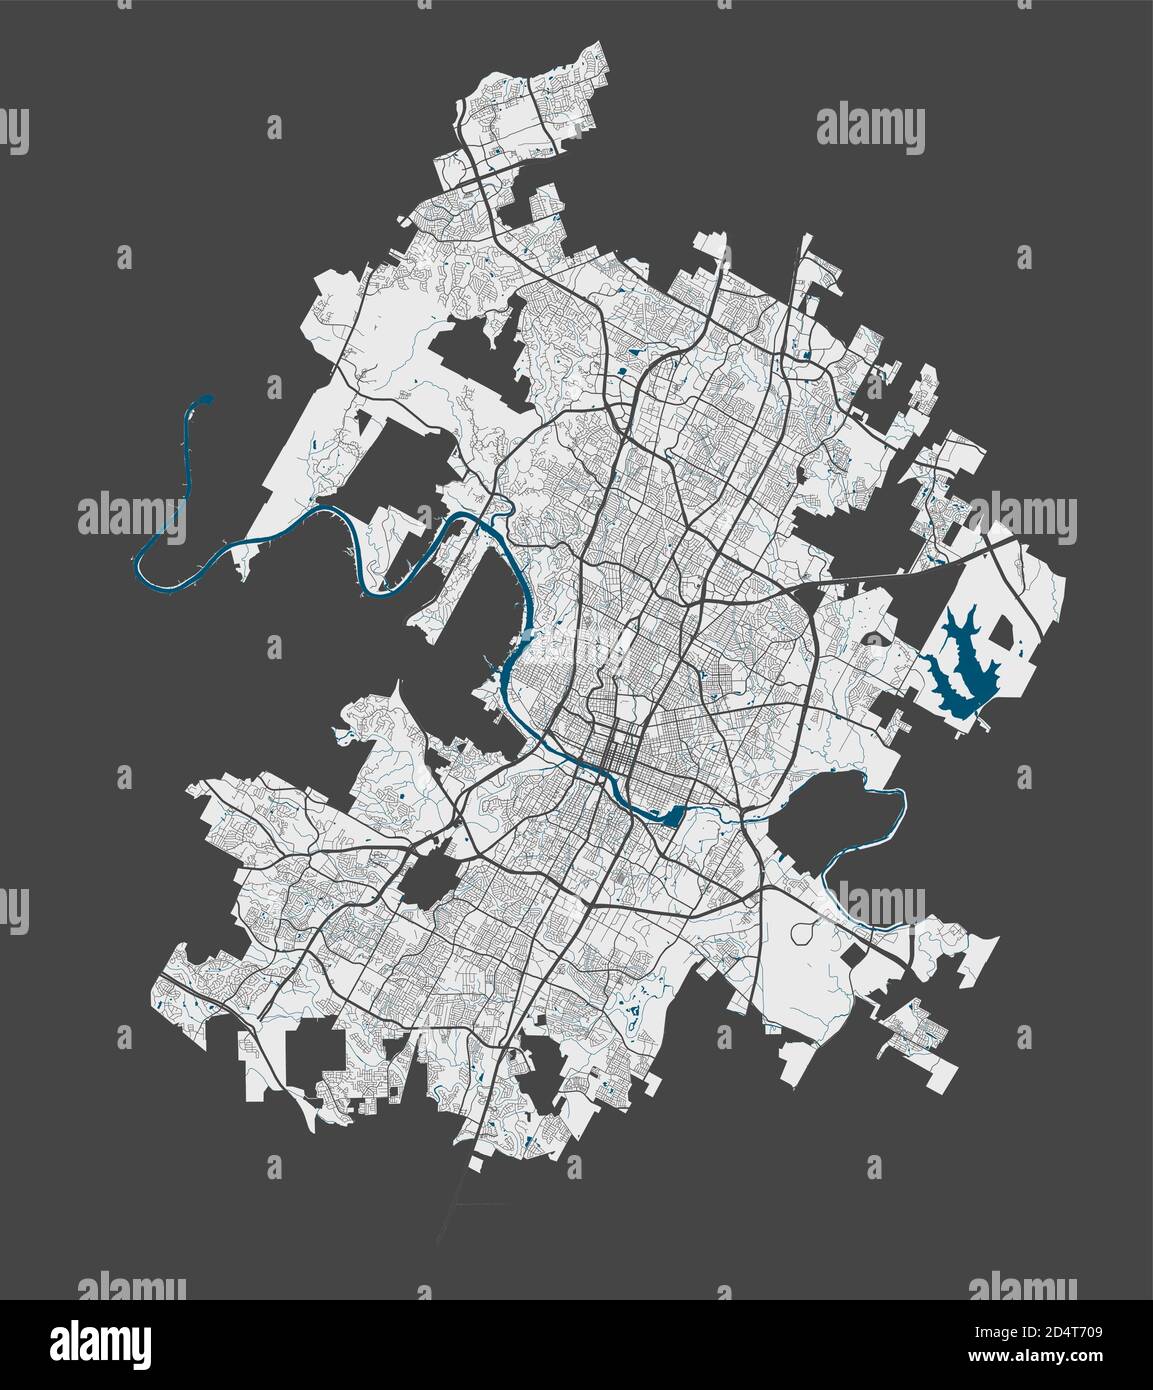 Karte von Austin. Detaillierte Vektorkarte von Austin Stadtverwaltung. Plakat mit Straßen und Wasser auf grauem Hintergrund. Stock Vektor